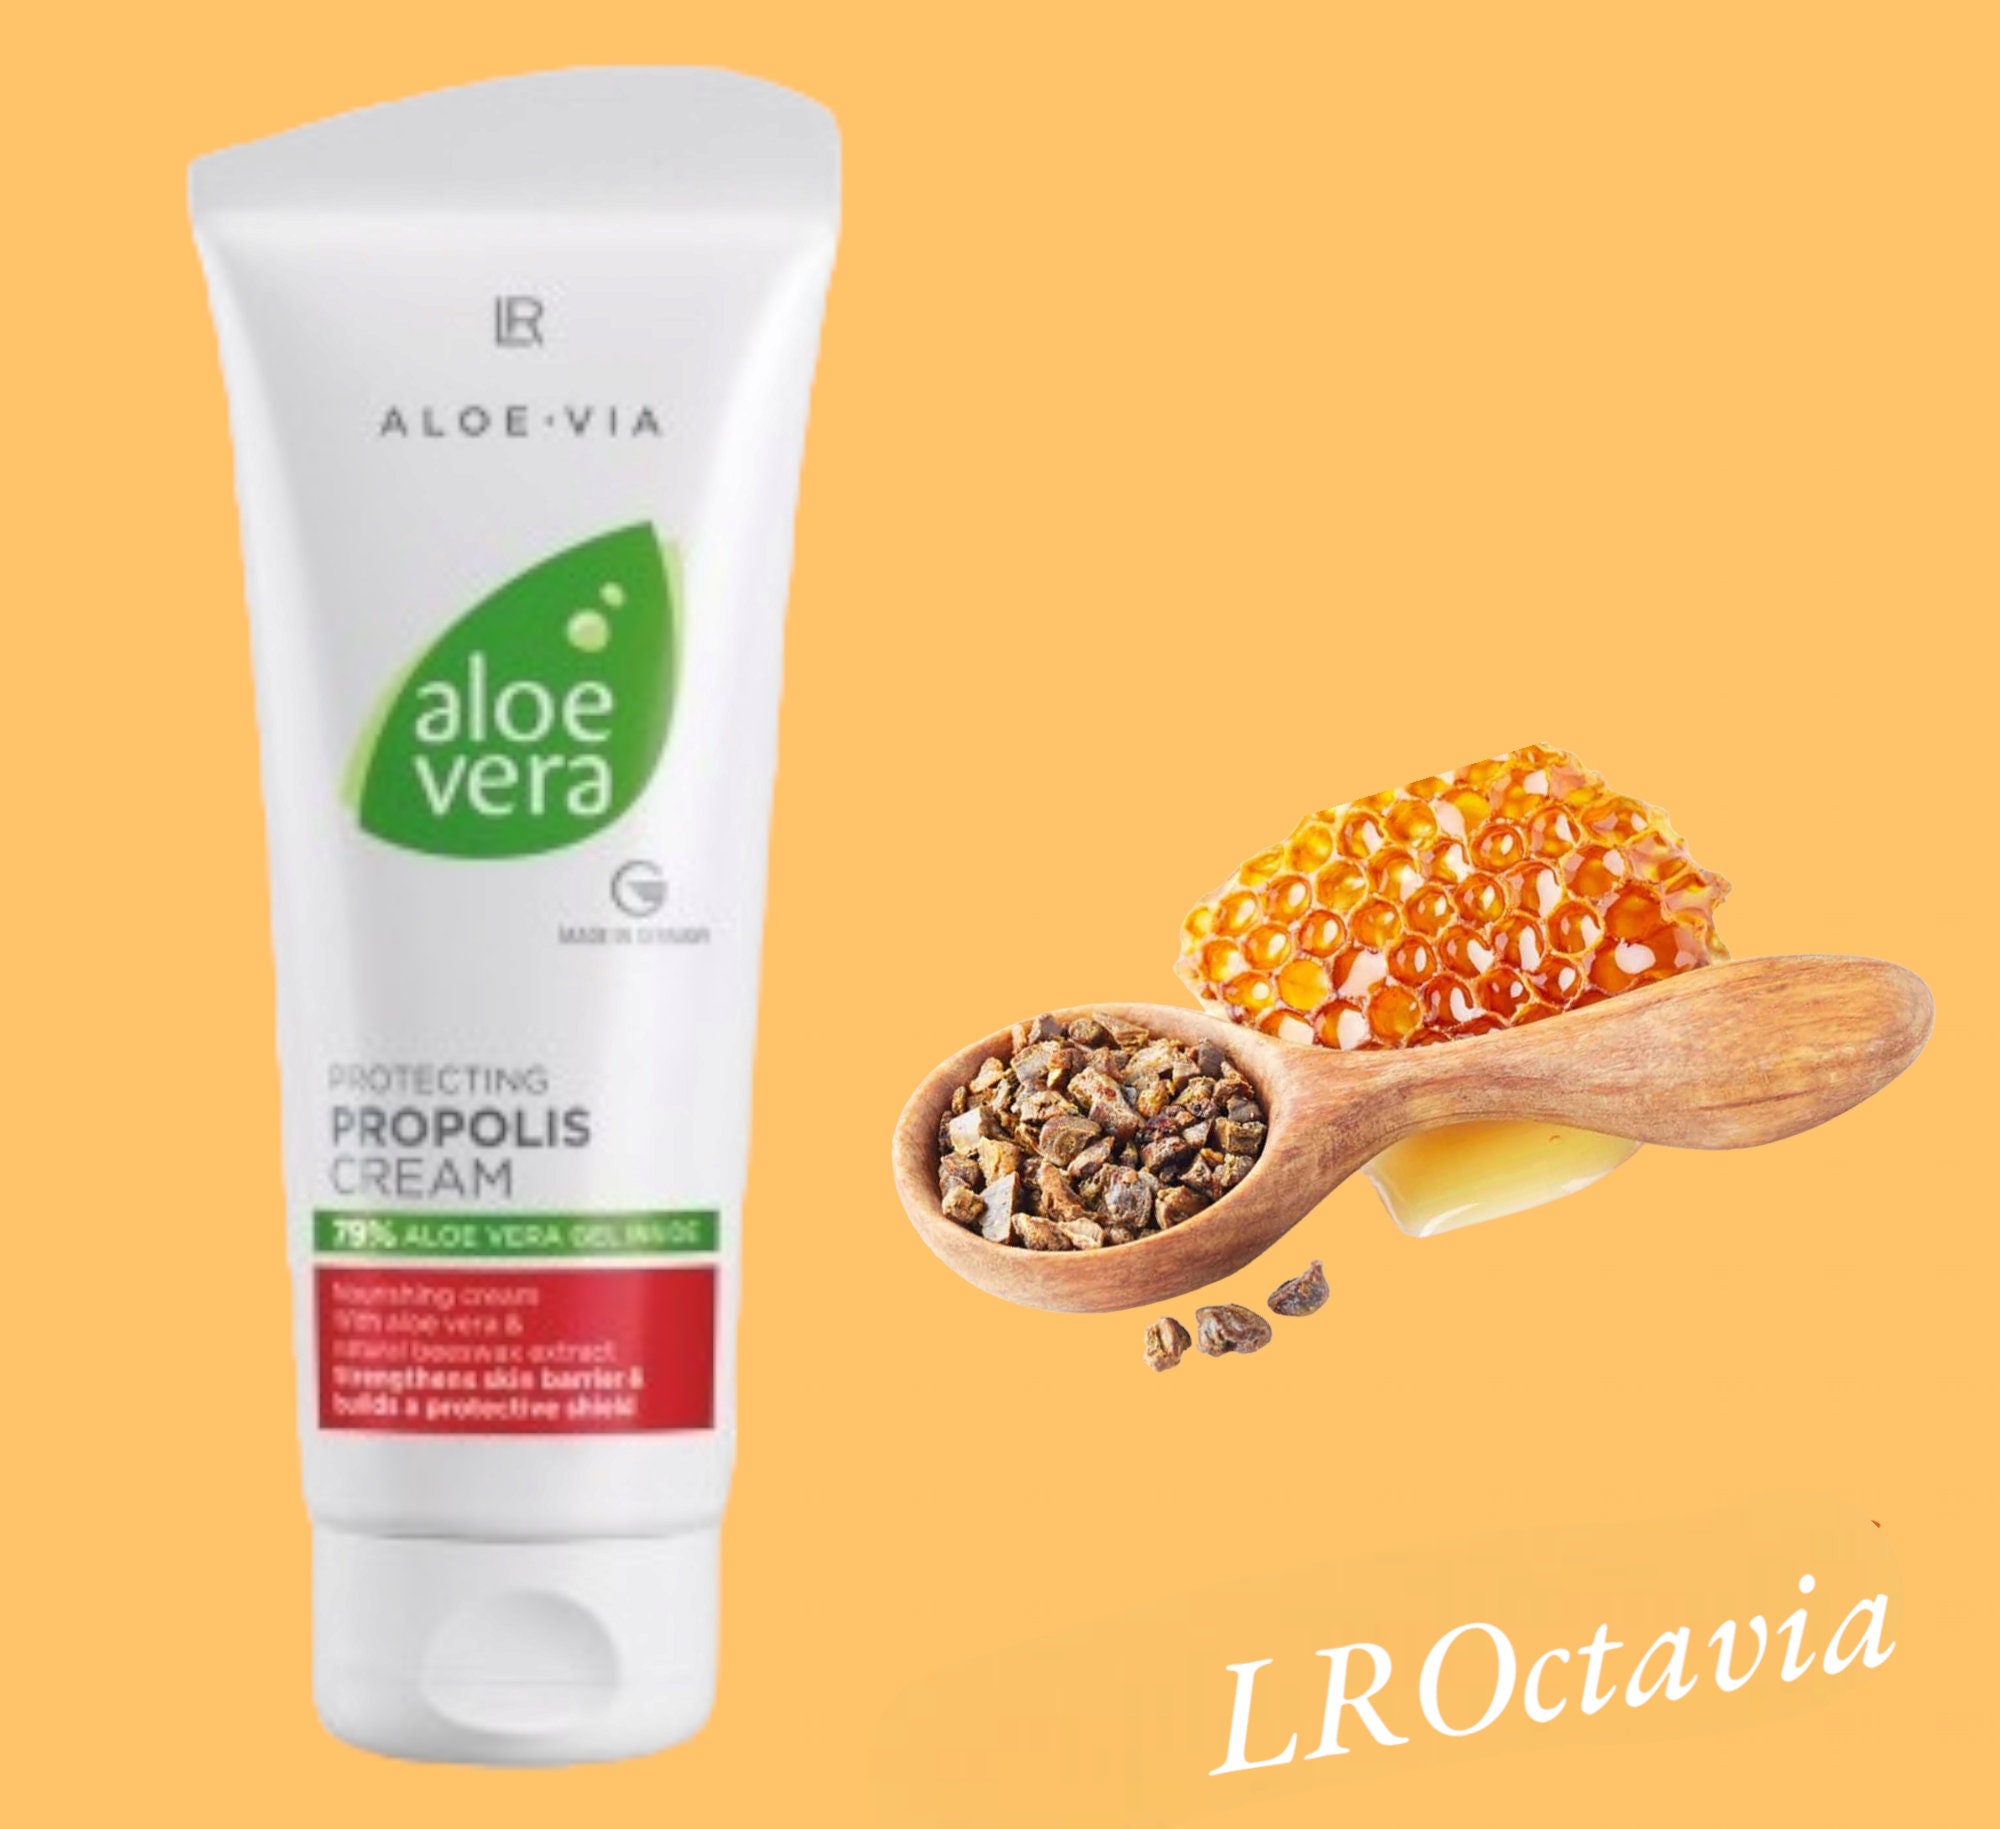 Aloe Vera Protective Propolis Cream 100ml Rich Cream for - Etsy